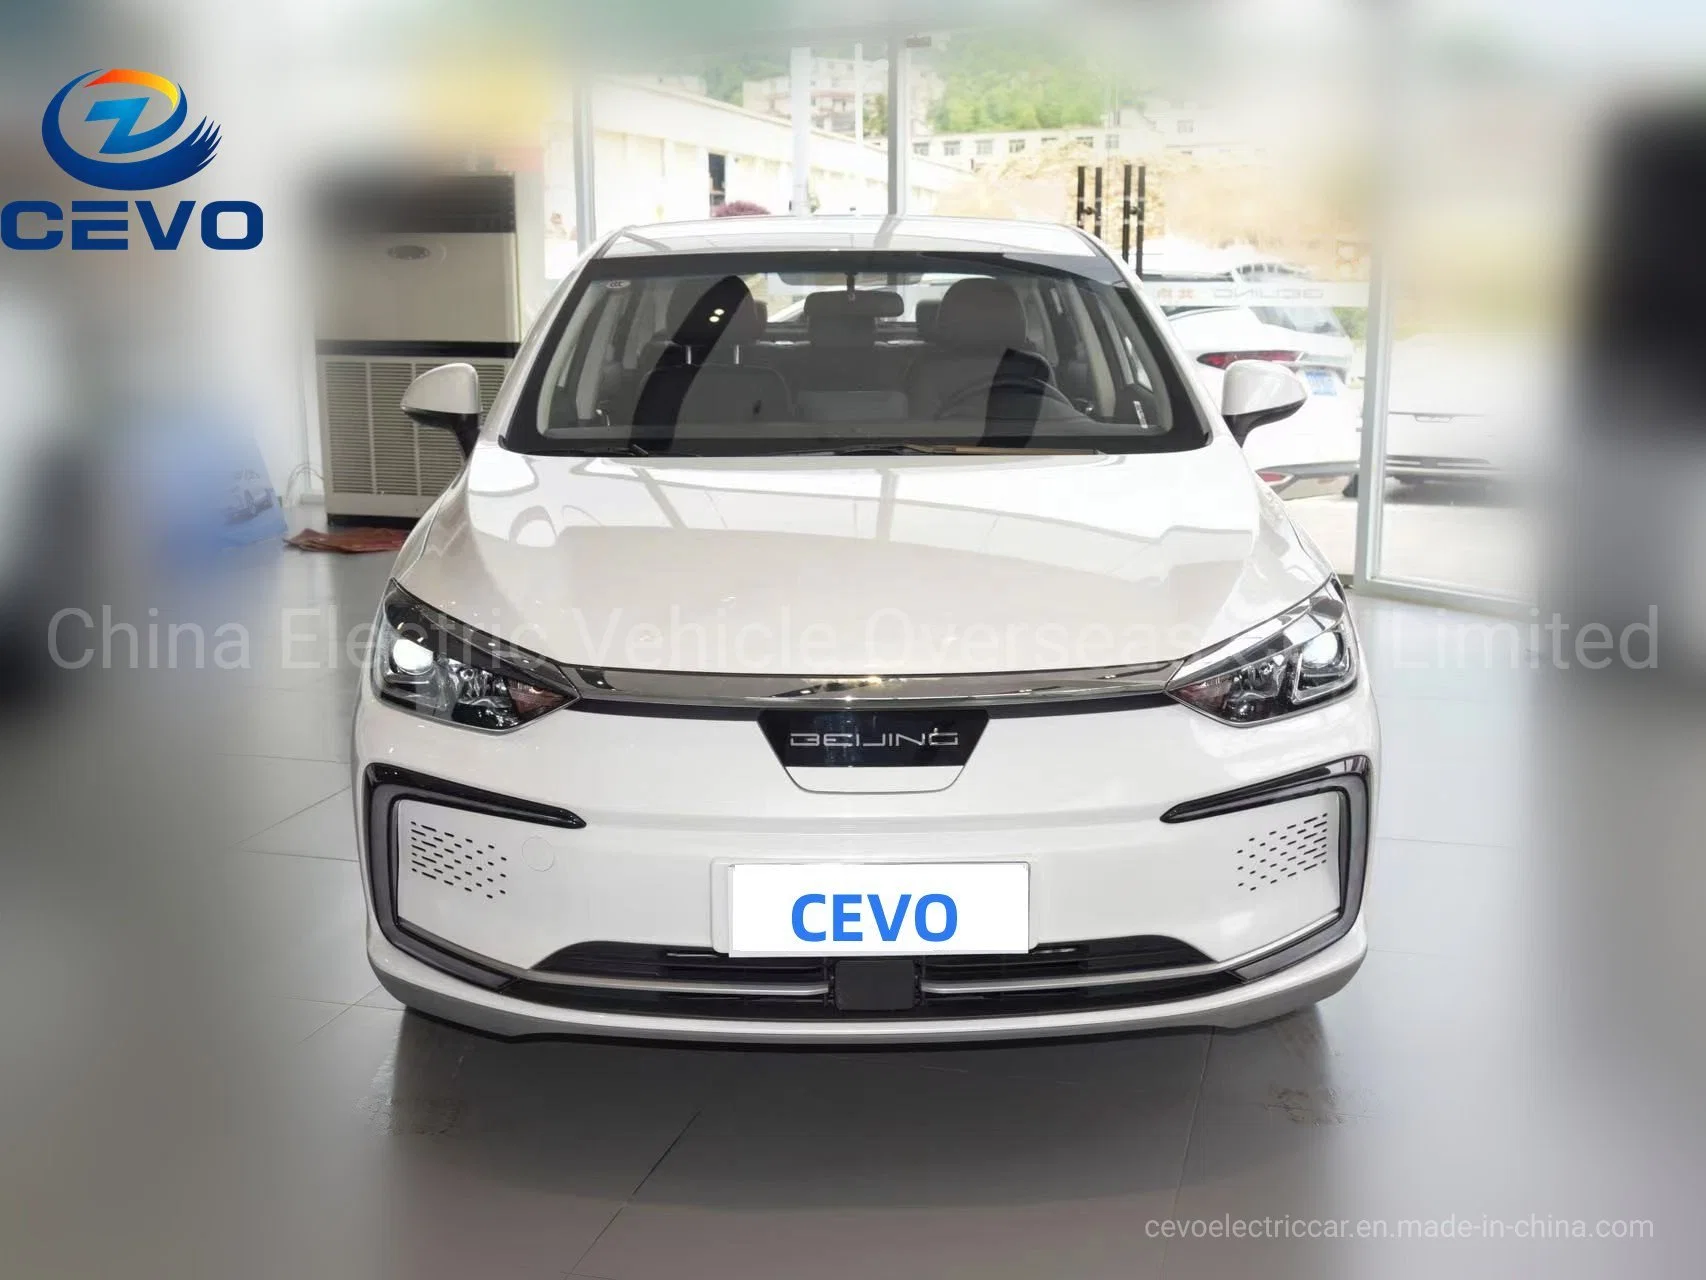 Meilleur Smartcondirtion haute vitesse grande batterie longue durée de la Chine plus abordable de véhicule électrique à faible coût le moins cher Sedan mini voiture électrique de l'UE Bjev5 pour la vente